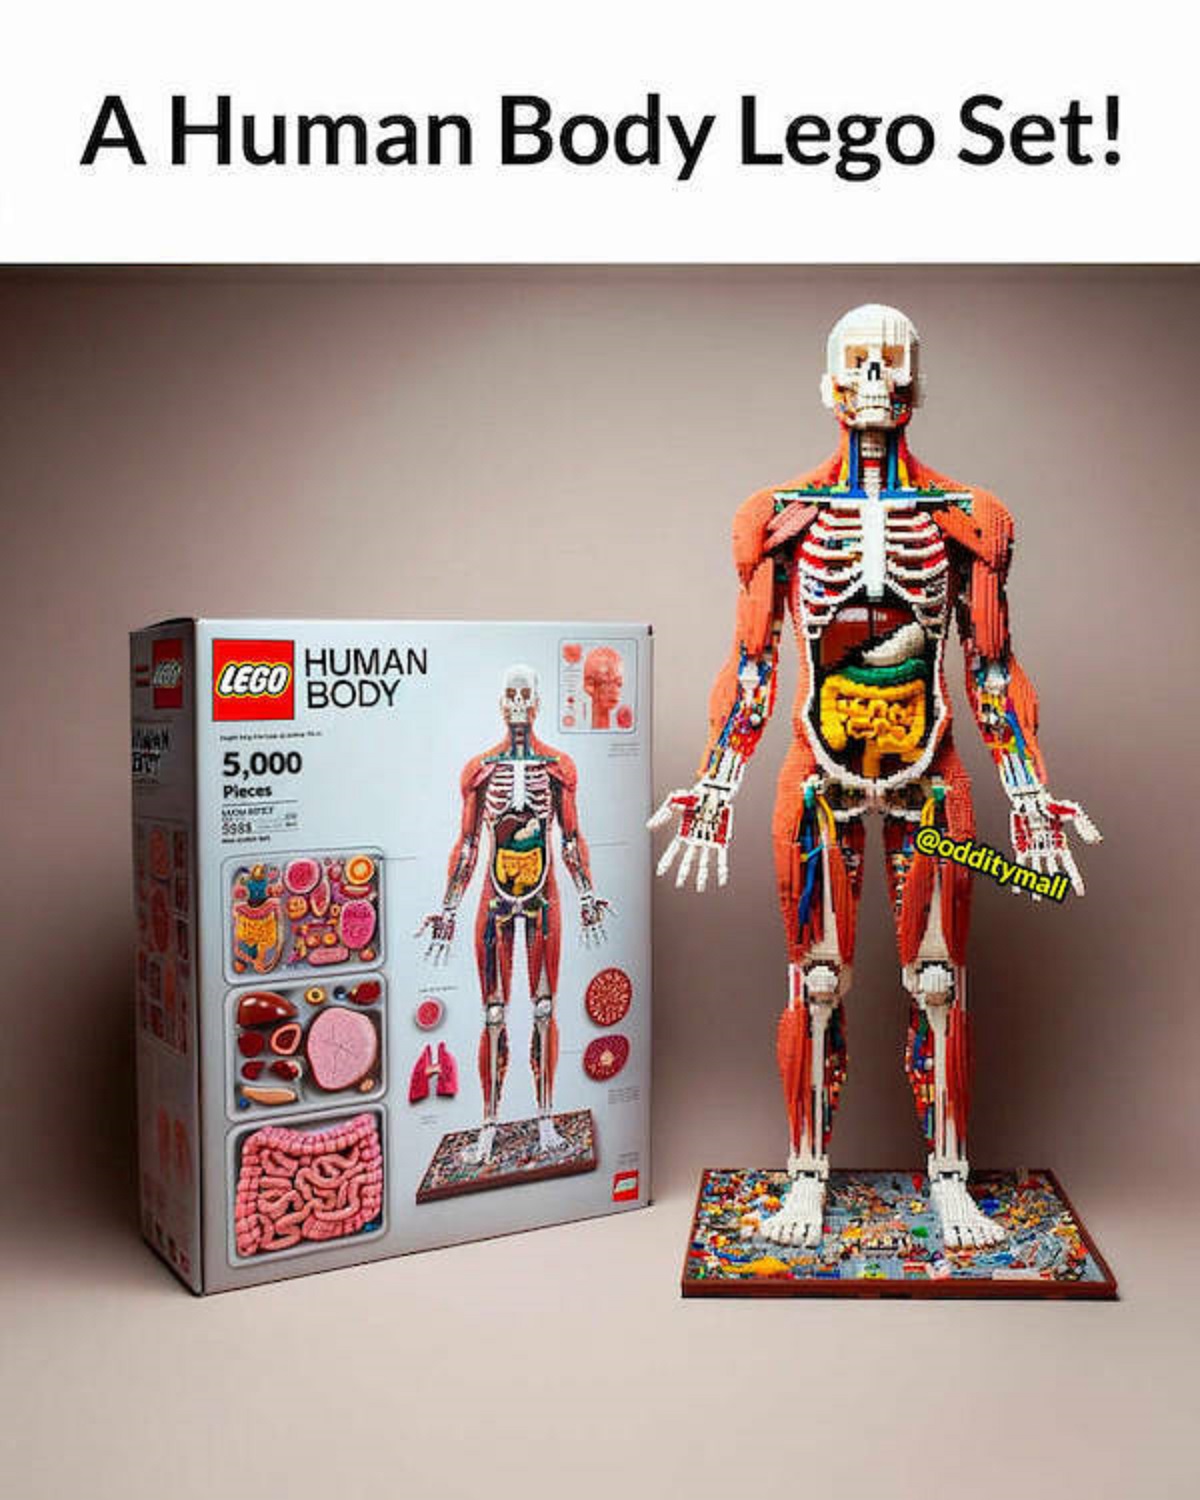 organ - A Human Body Lego Set! Mwan Lego 5,000 Pieces Mom Biry 5588 Human Body Free